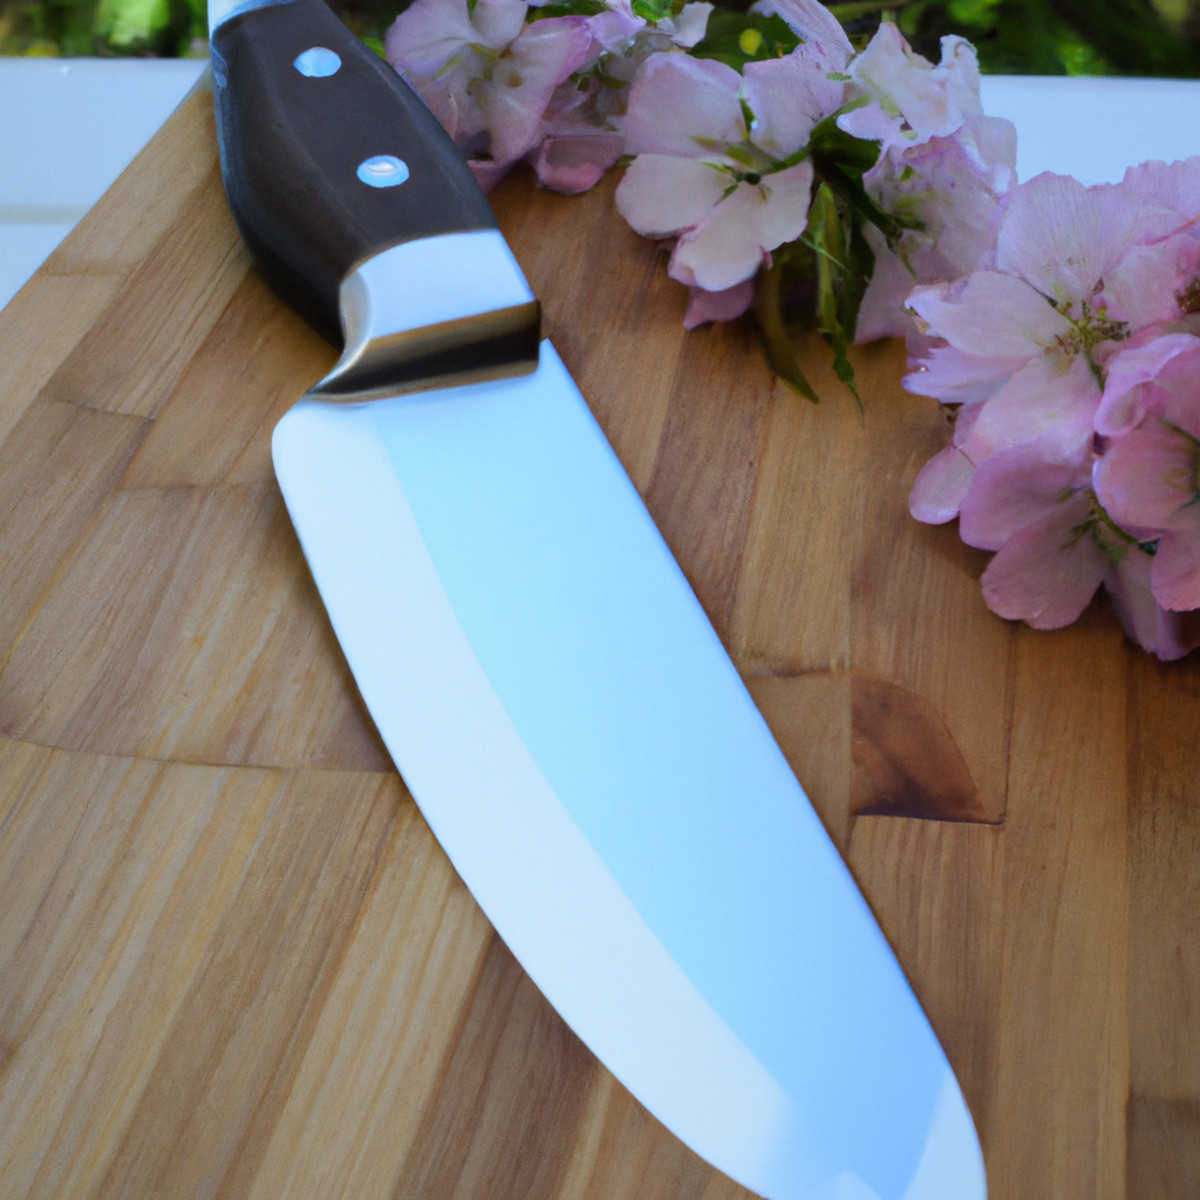 كاسومي: شرح السكين الياباني الضبابي الضبابي